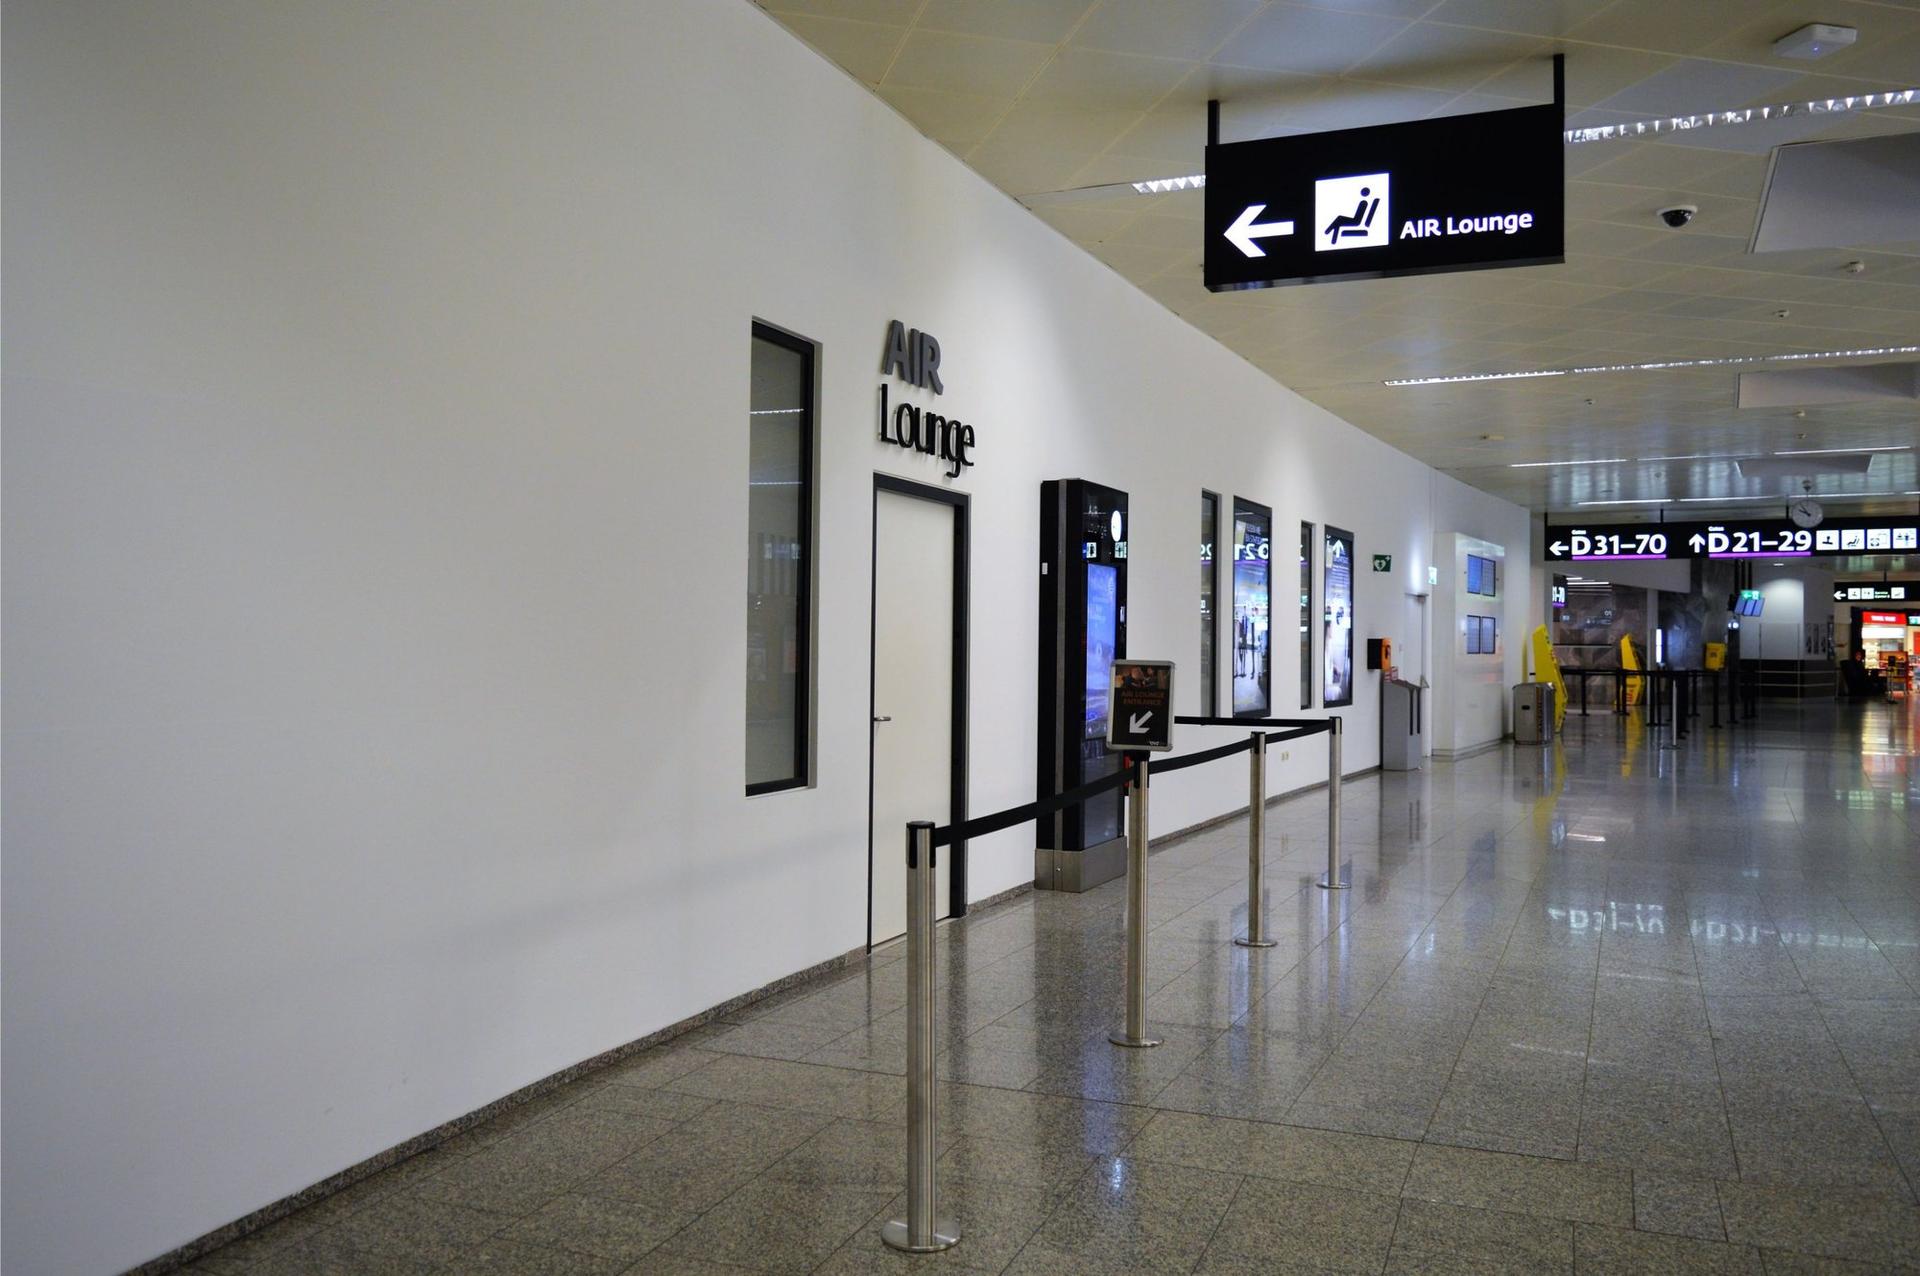 Air Lounge (Non-Schengen)  image 13 of 23